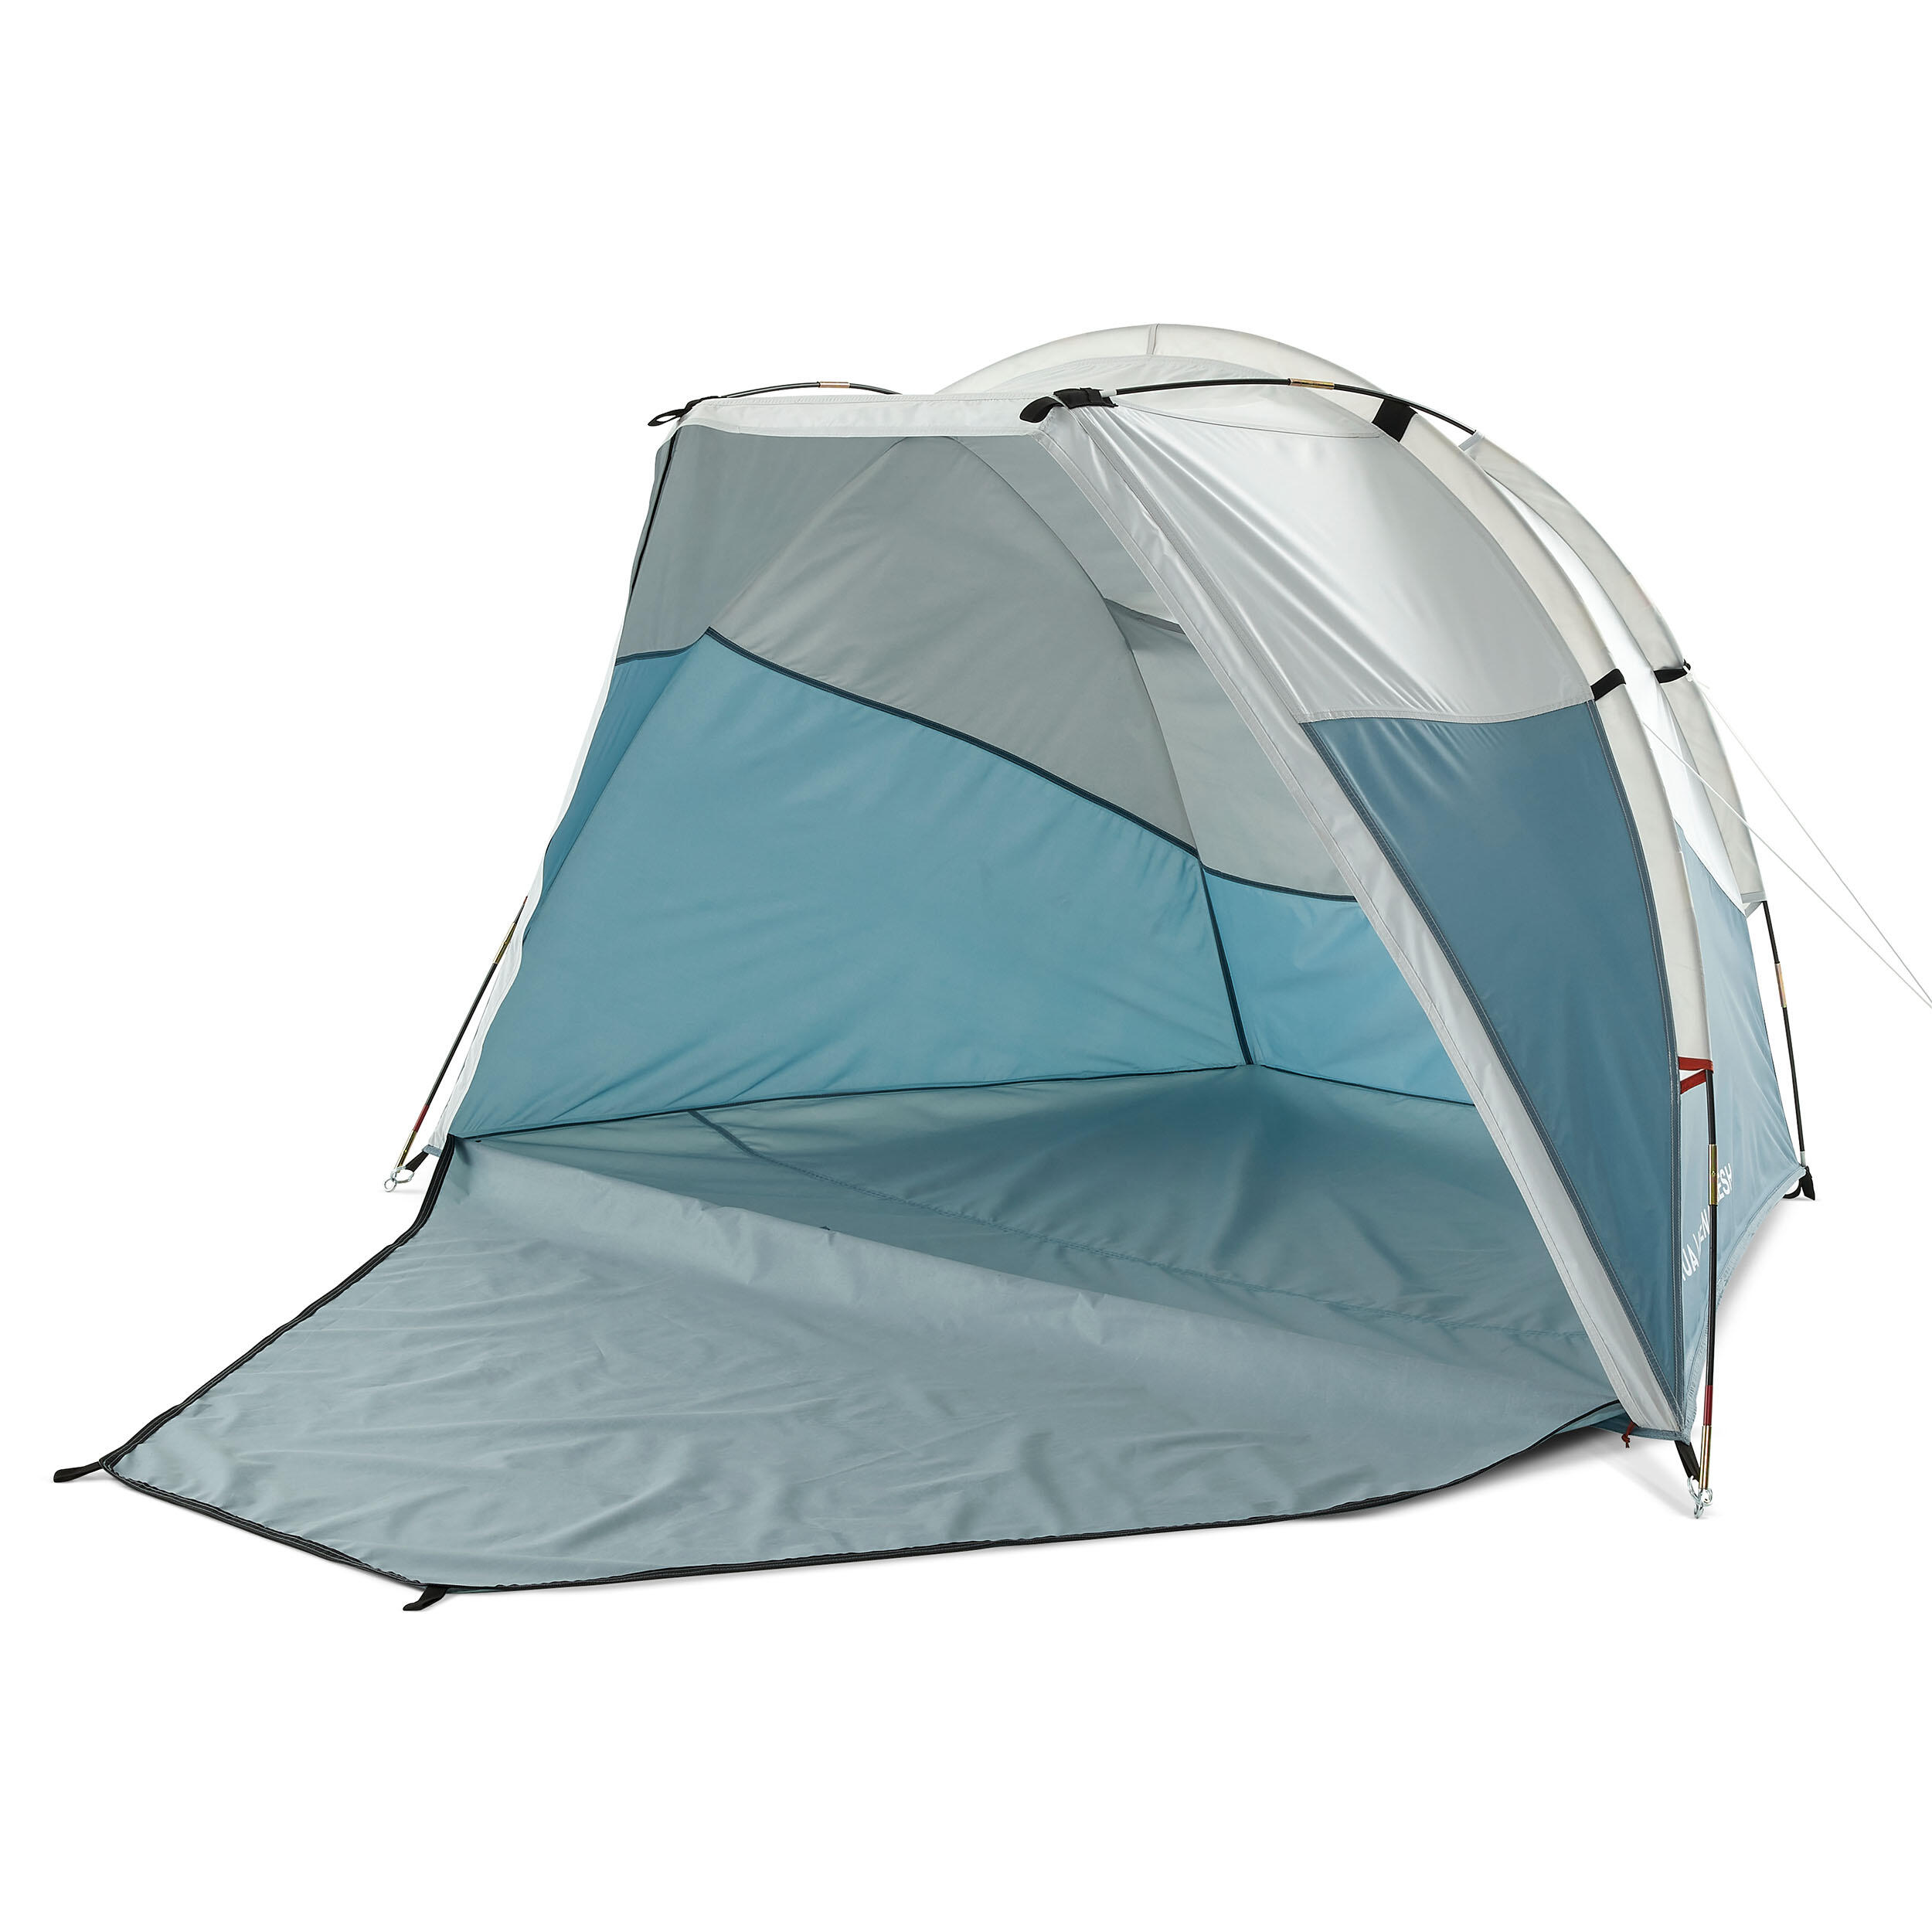 Adăpost cu structură cu bețe camping Arpenaz 0 XL Fresh Compact 2 Adulți QUECHUA decathlon.ro